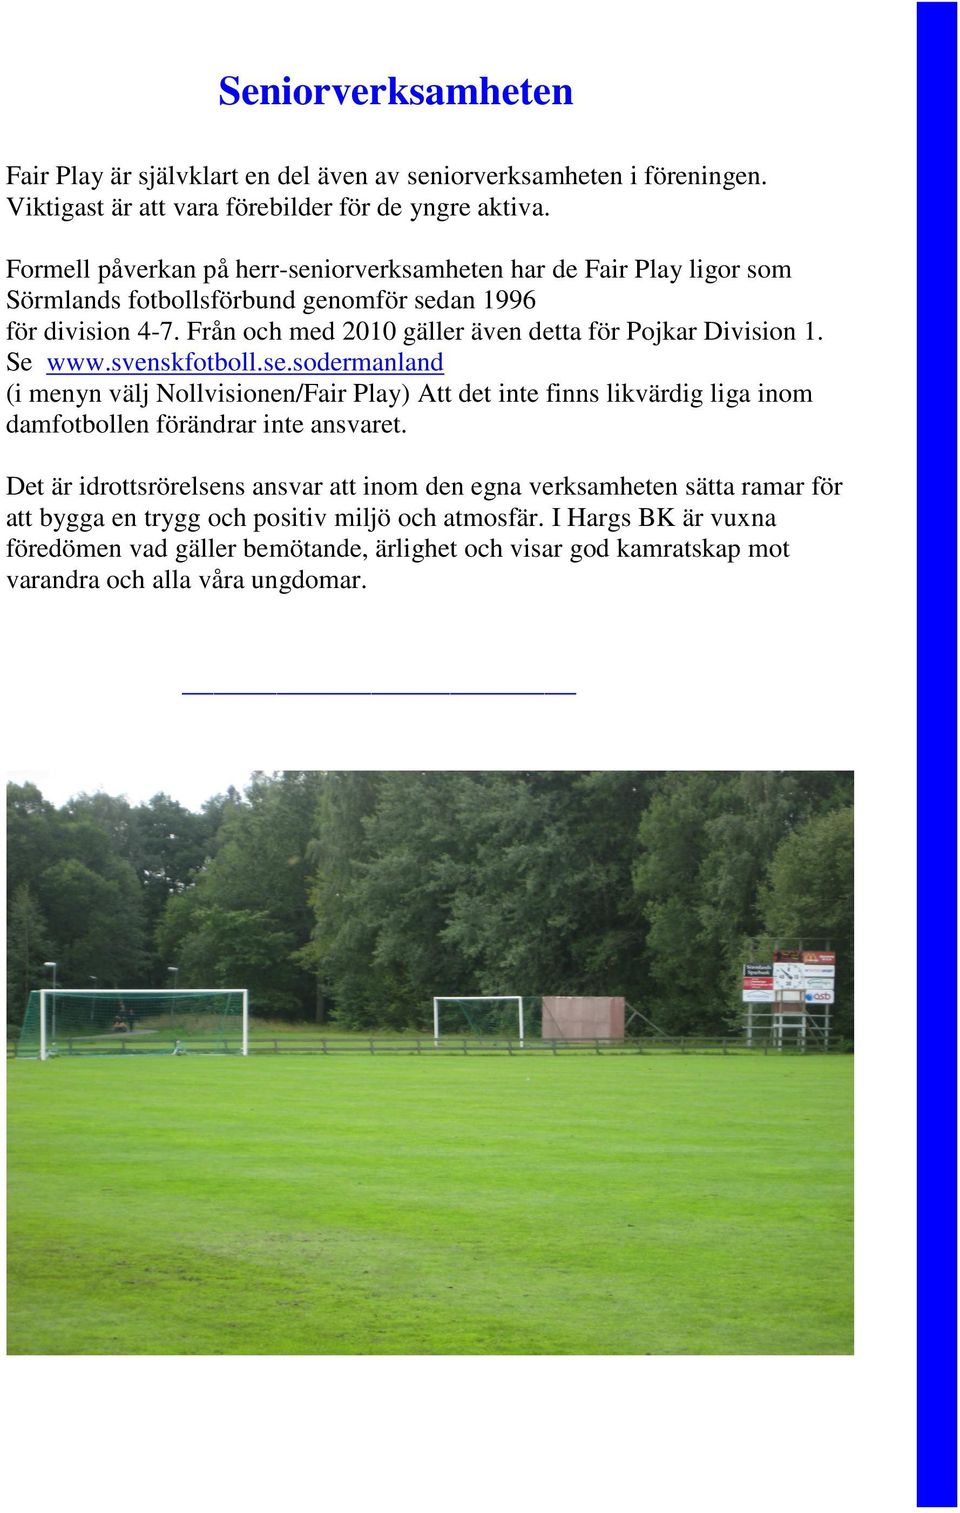 Från och med 2010 gäller även detta för Pojkar Division 1. Se www.svenskfotboll.se.